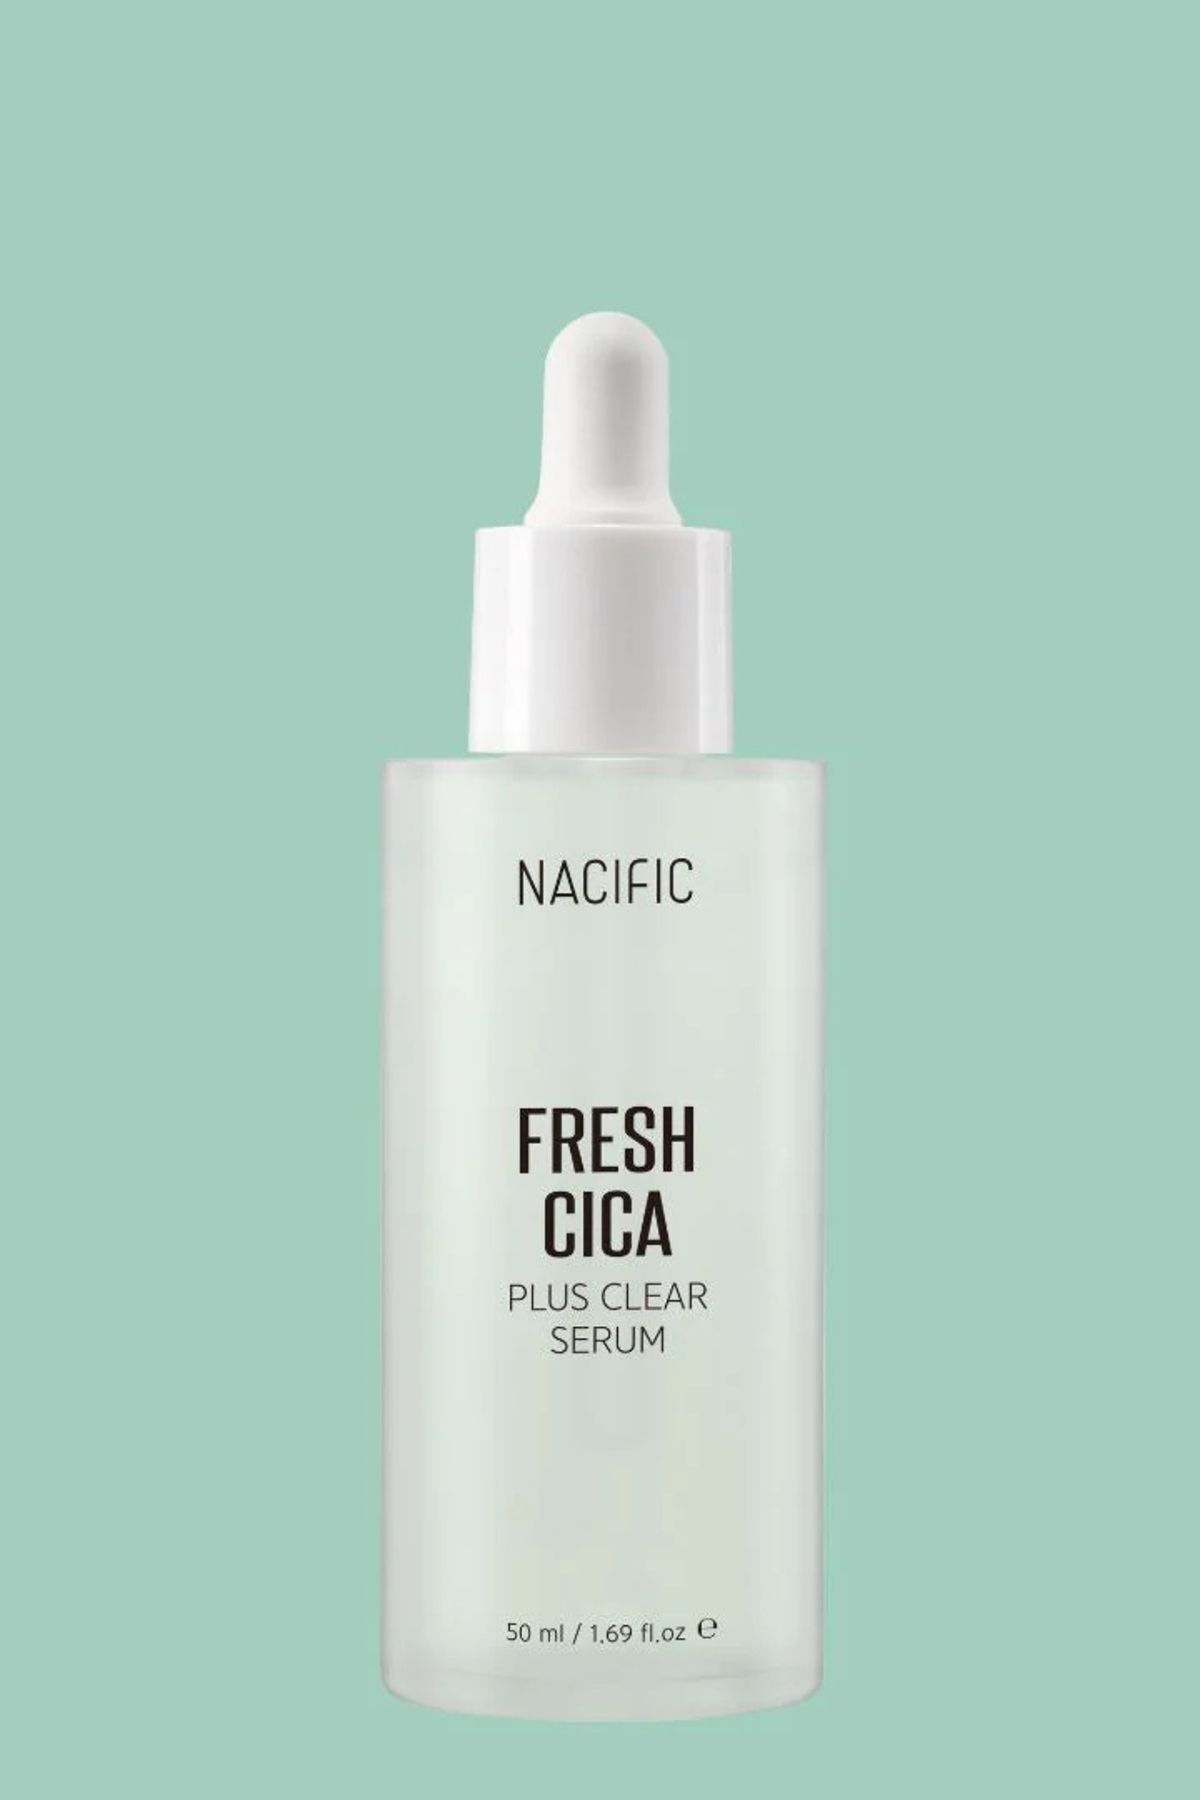 Nacific Fresh Cica Plus Clear Serum 50ml - Arındırıcı Nemlendirici Cica Serum